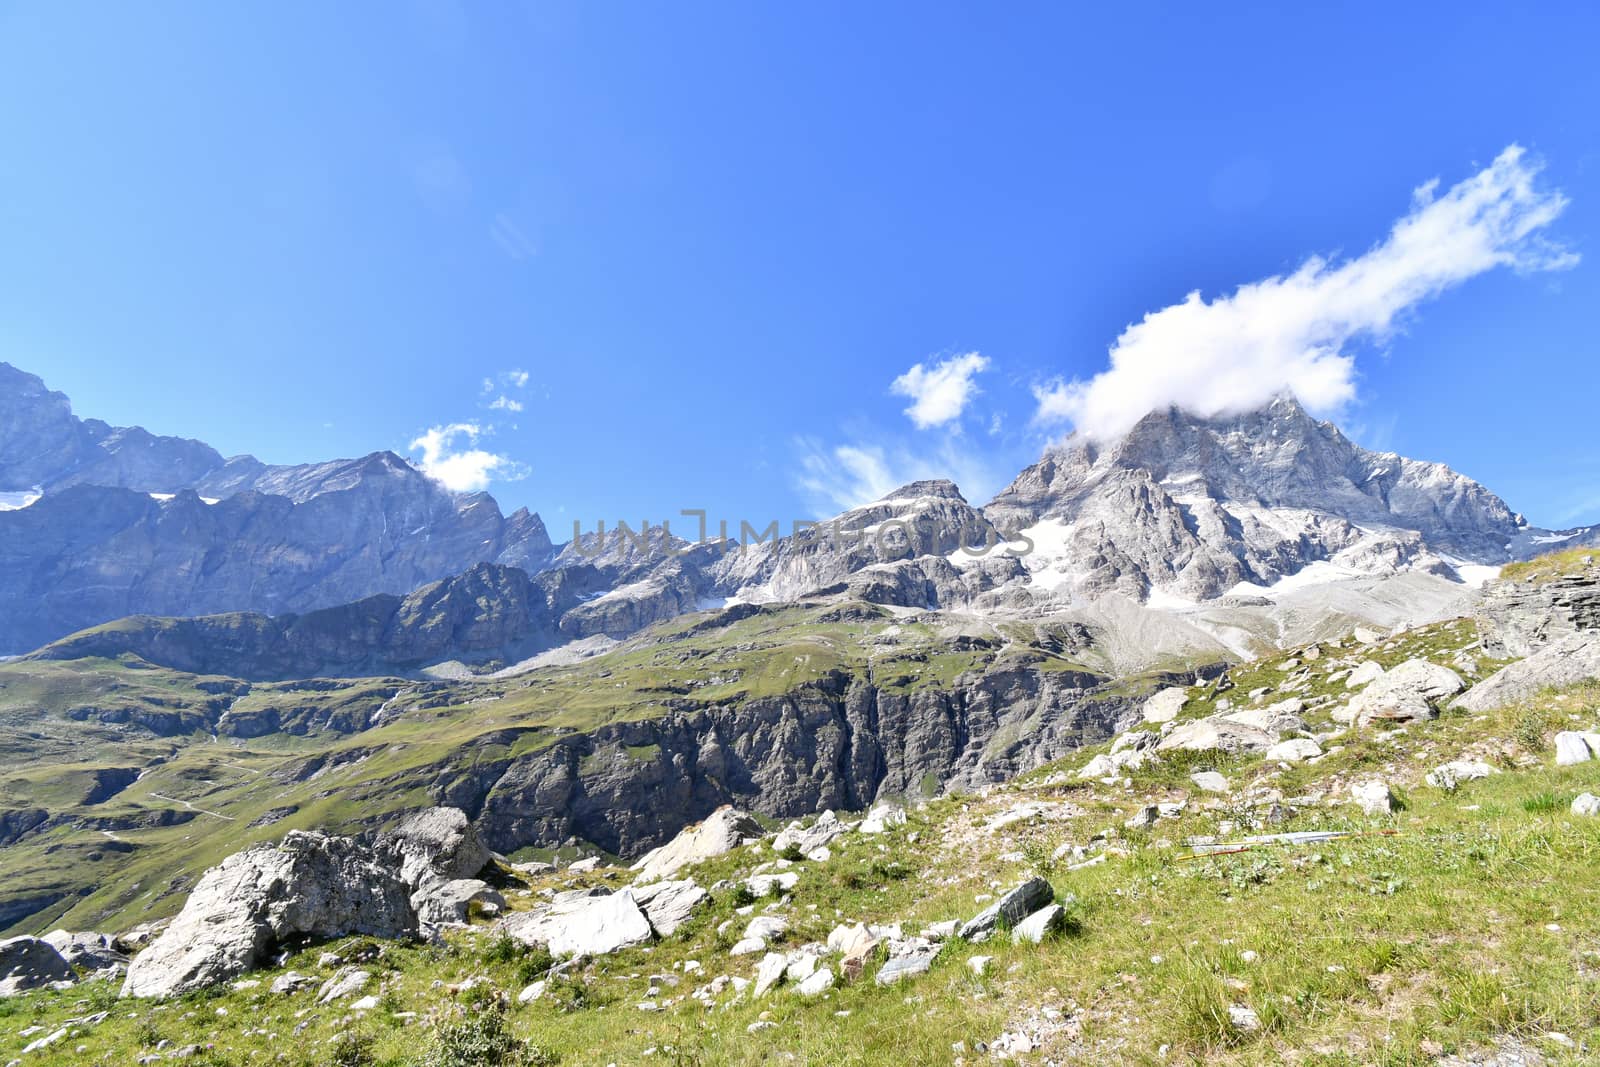 Mountain landscape with the Matterhorn, seen from Plan Maison